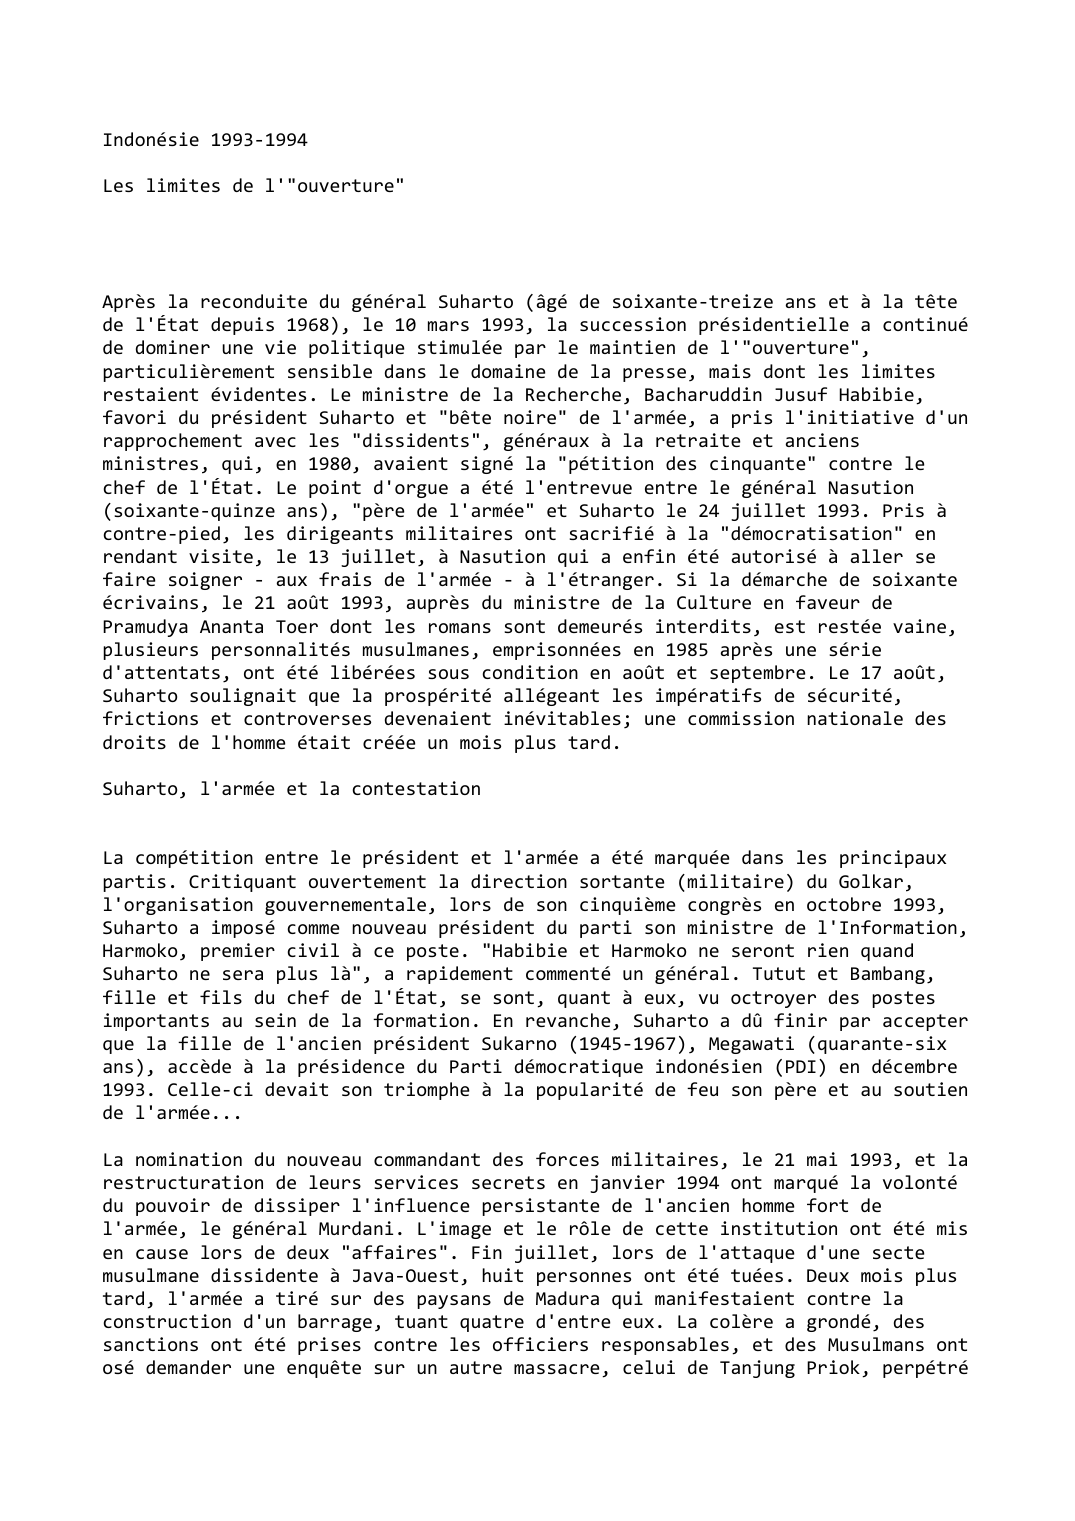 Prévisualisation du document Indonésie 1993-1994

Les limites de l'"ouverture"